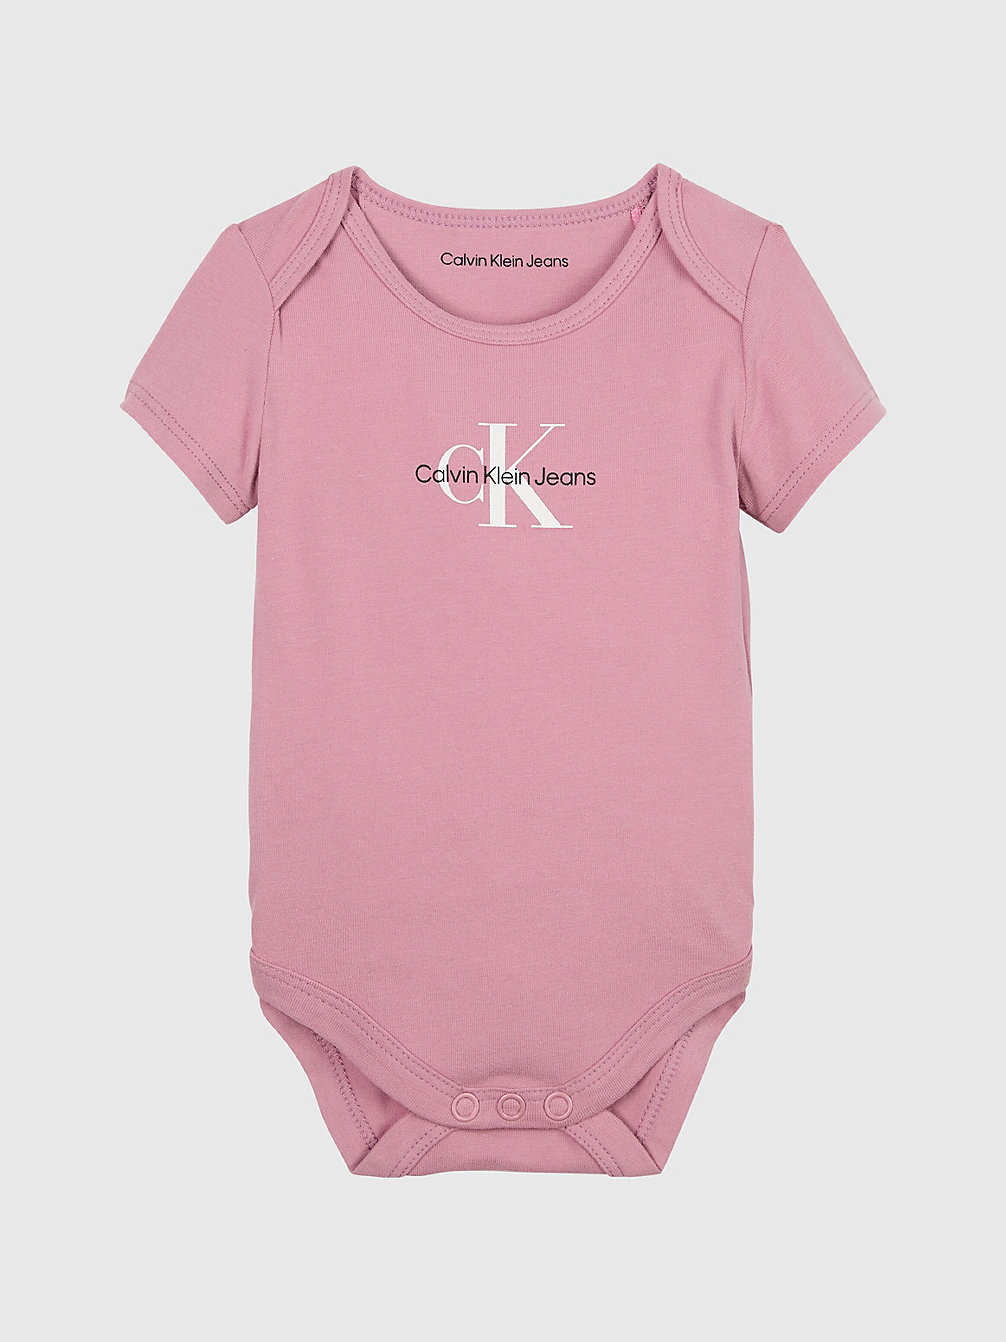 FOXGLOVE Newborn-Bodysuit Met Logo undefined newborn Calvin Klein